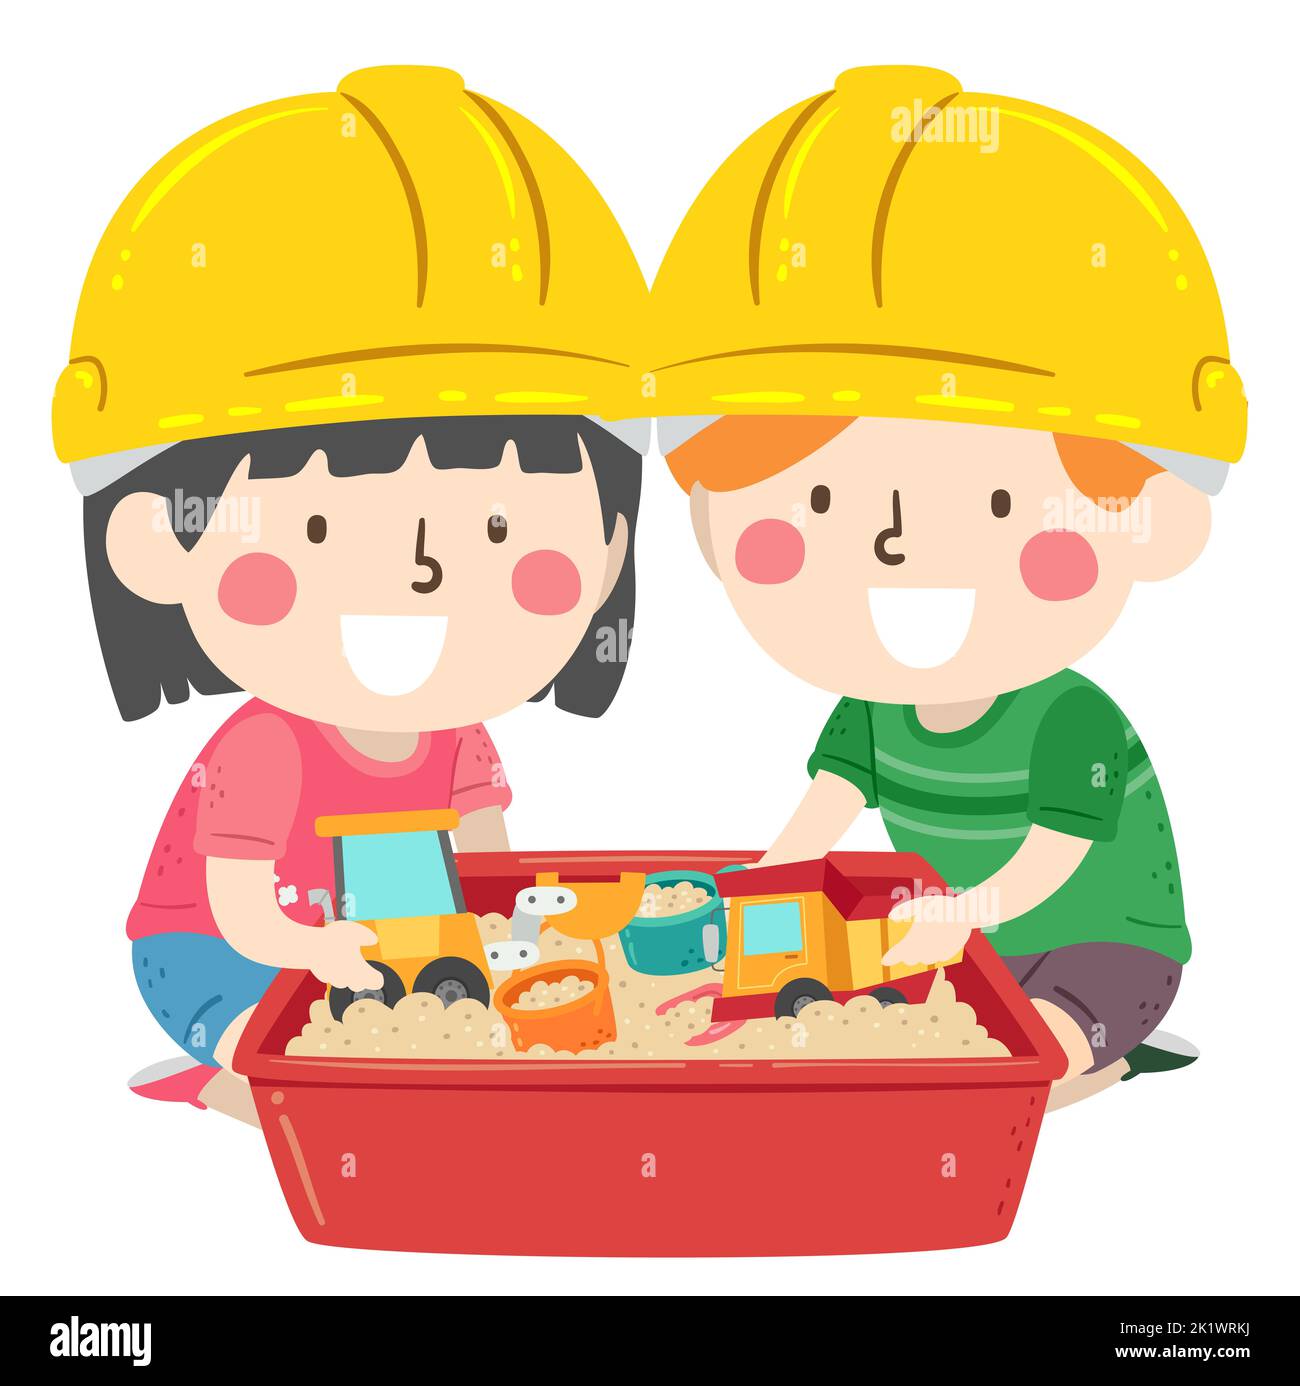 Illustration des enfants portant un chapeau rigide jaune et jouant avec des jouets de construction dans la sandbox Banque D'Images